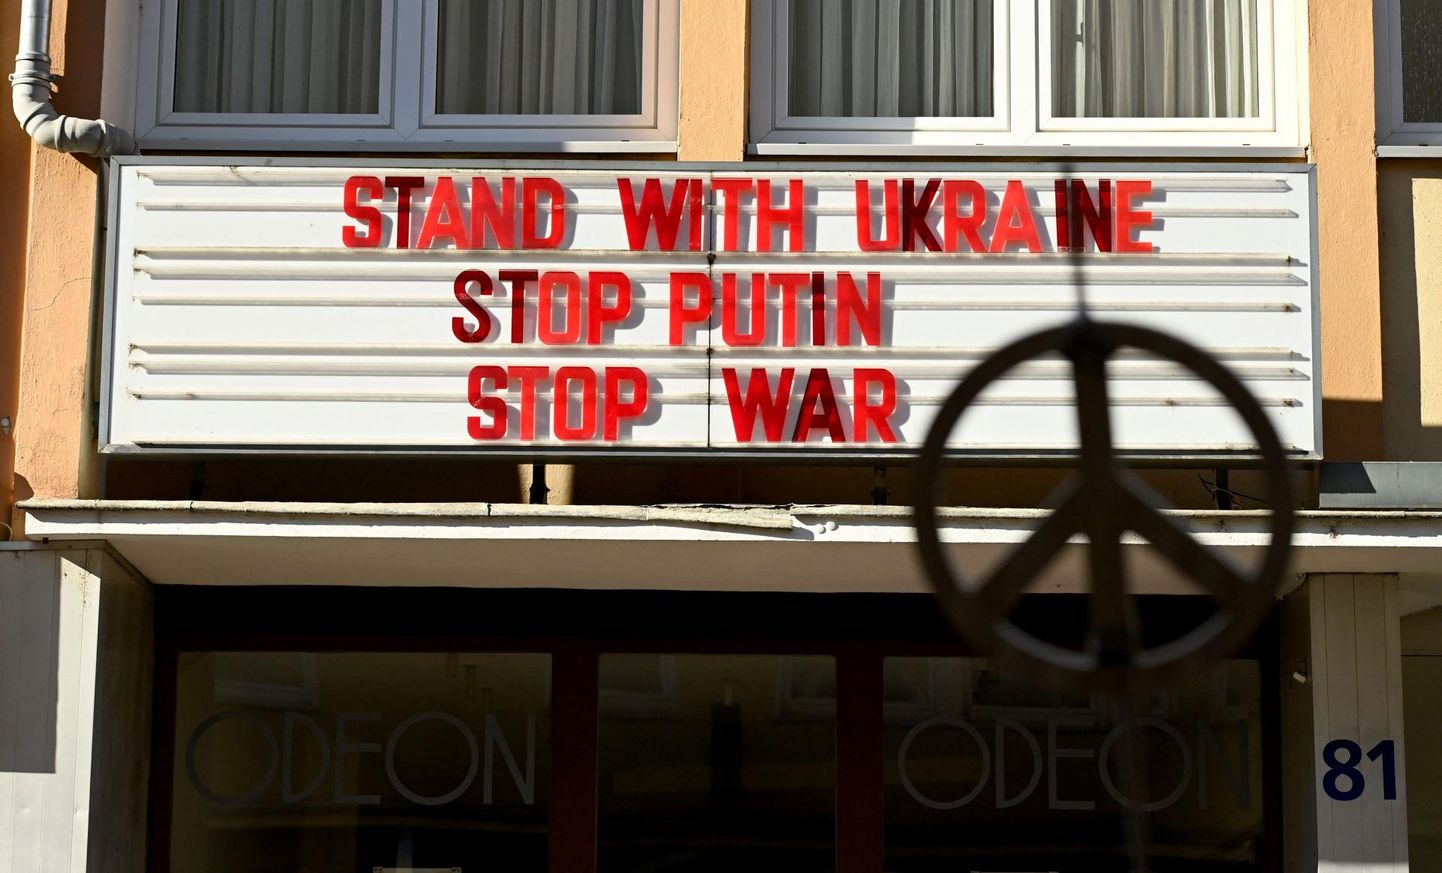 Kölni Odeoni kinol on kirjas «Seiskem koos Ukrainaga, peatage Putin, peatage sõda». 